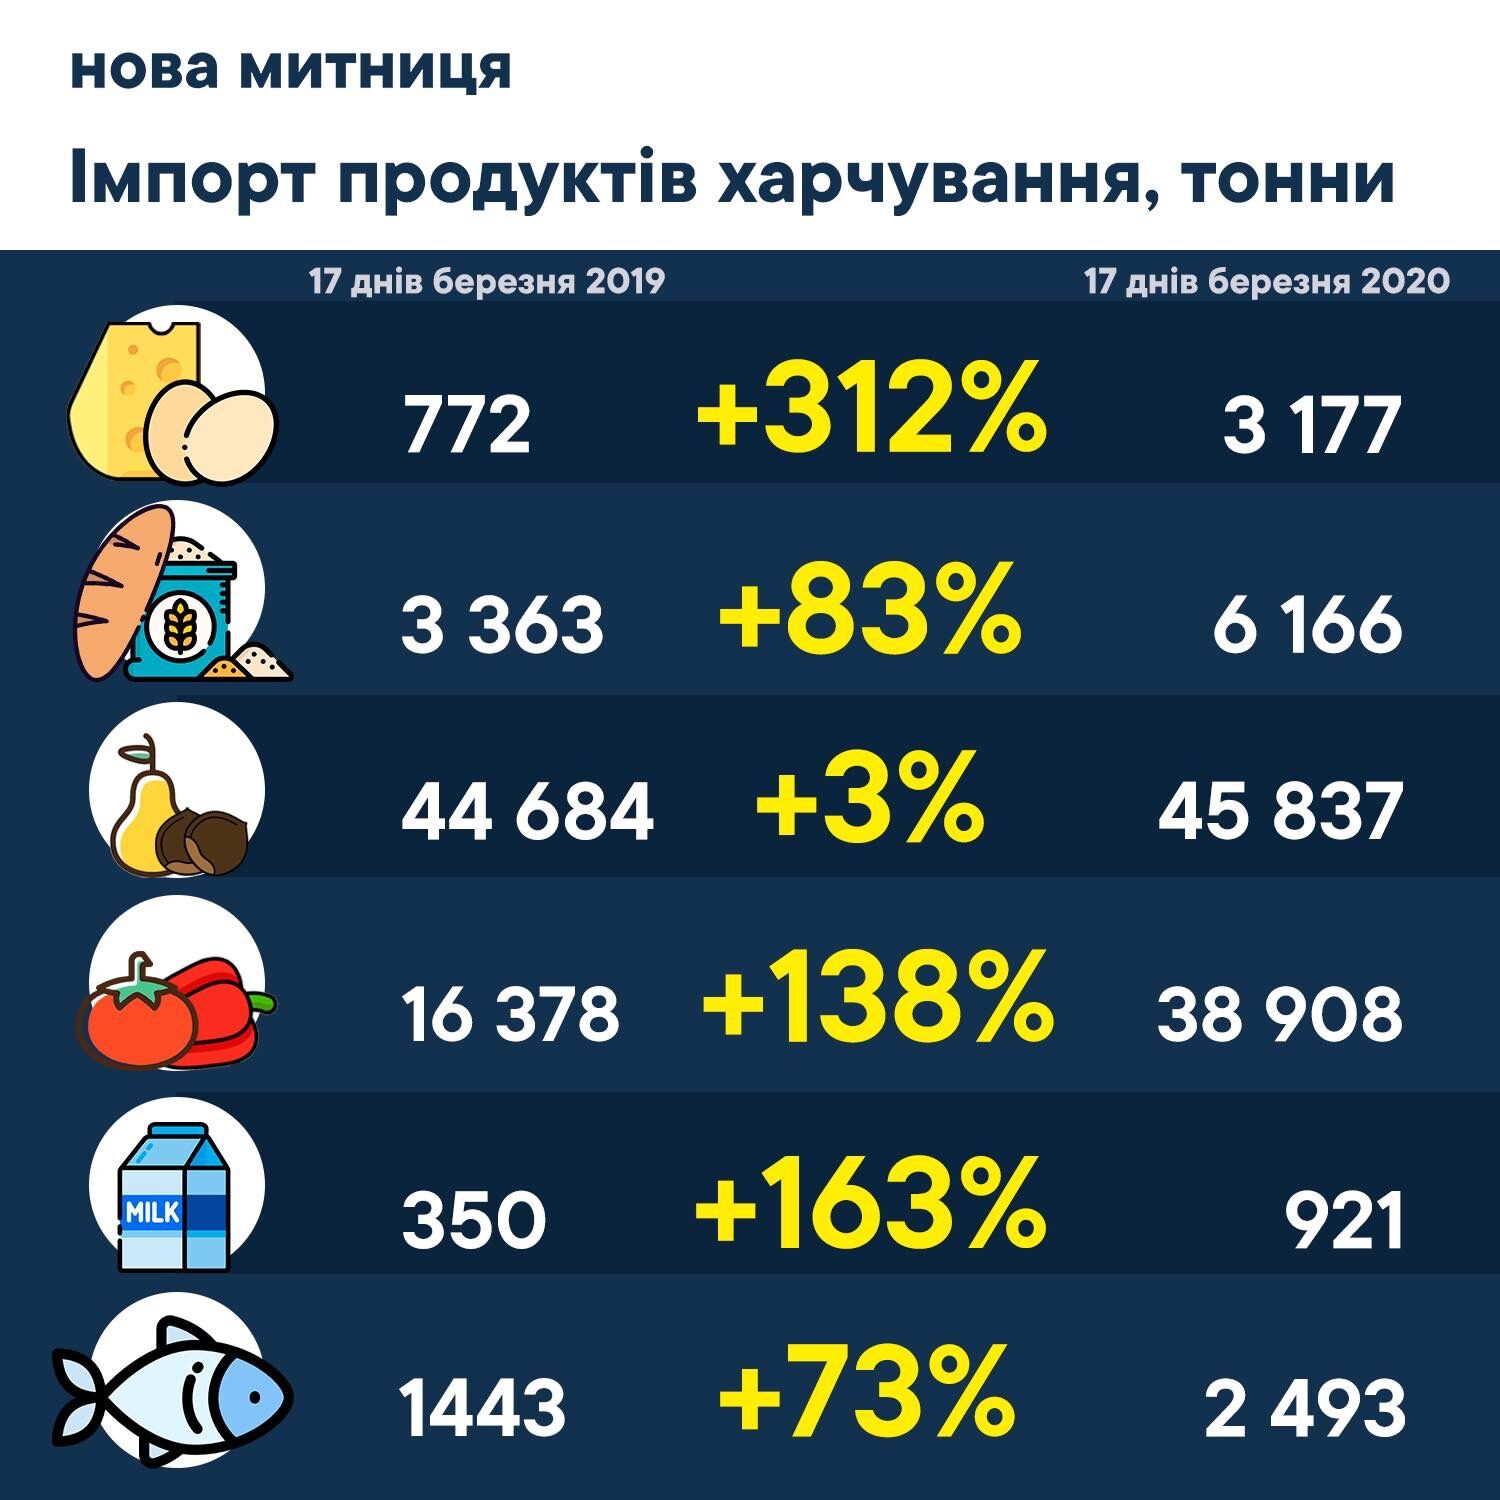 Дефицит продуктов в магазинах: украинцам сказали, чего ждать